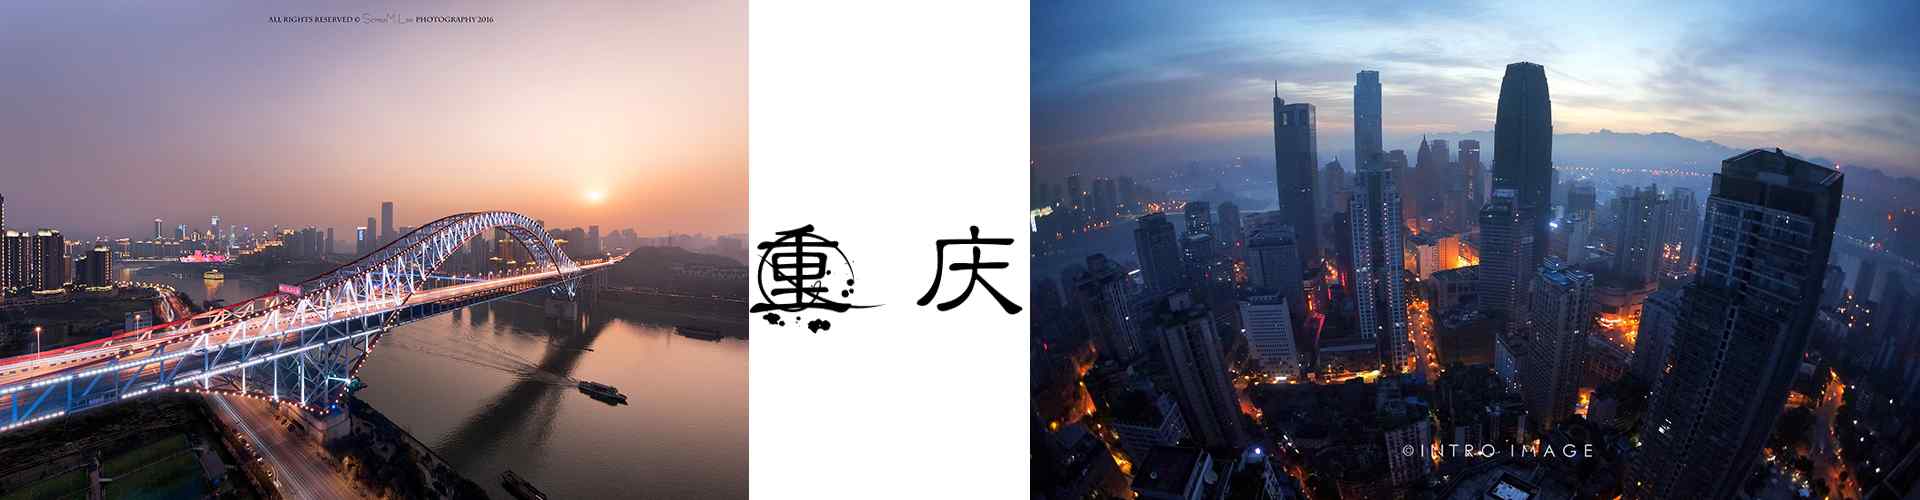 重庆风景_重庆图片_重启旅游景点_重庆旅游攻略_风景壁纸